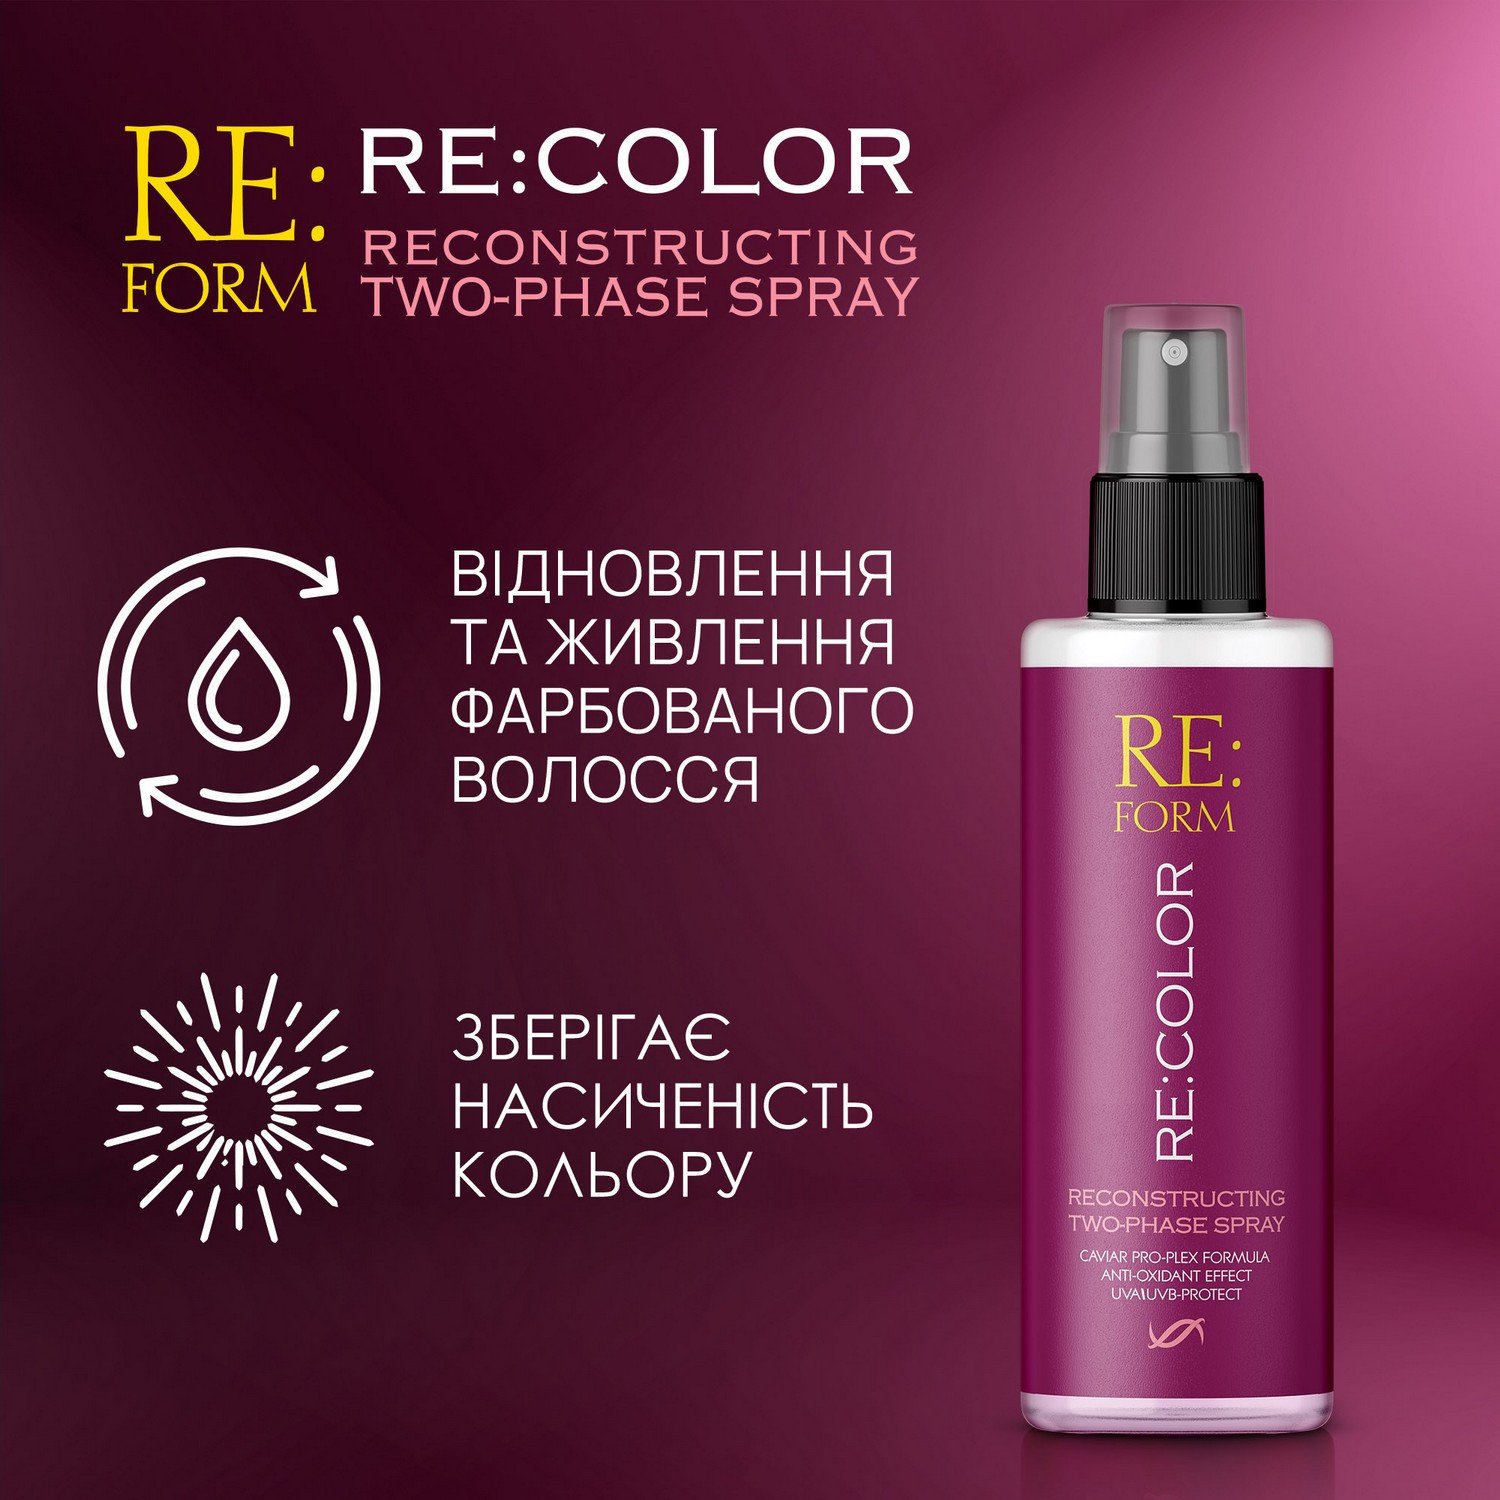 Реконструюючий двофазний спрей Re:form Re:color Збереження кольору та відновлення фарбованого волосся, 200 мл - фото 4